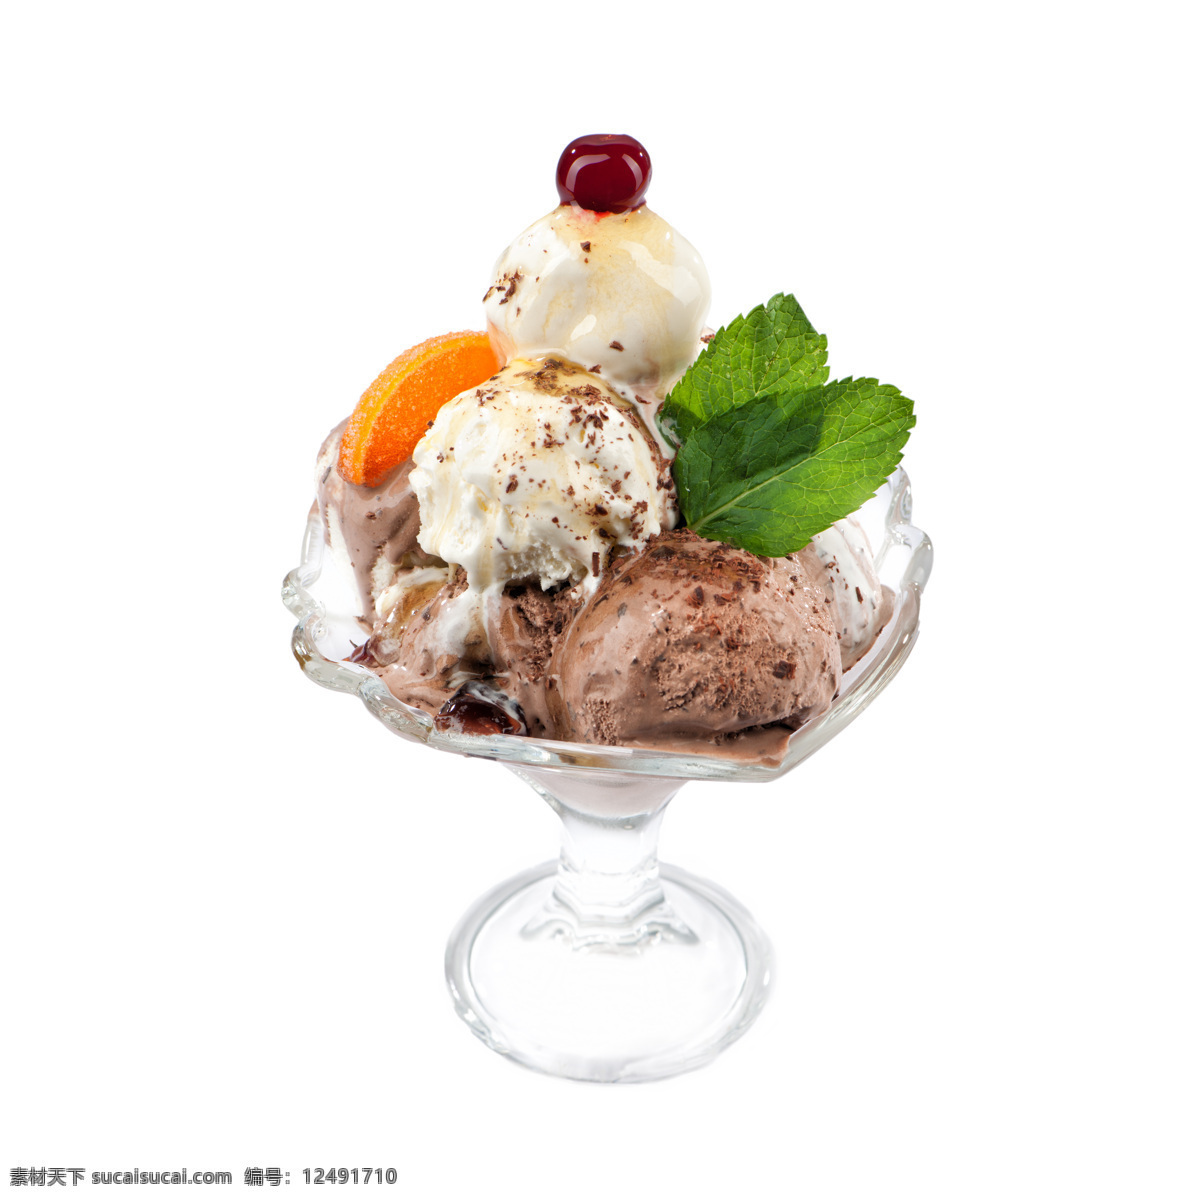 冰淇淋摄影 冰淇淋 冰激凌 美食 美味 玻璃杯子 水果蔬菜 餐饮美食 白色